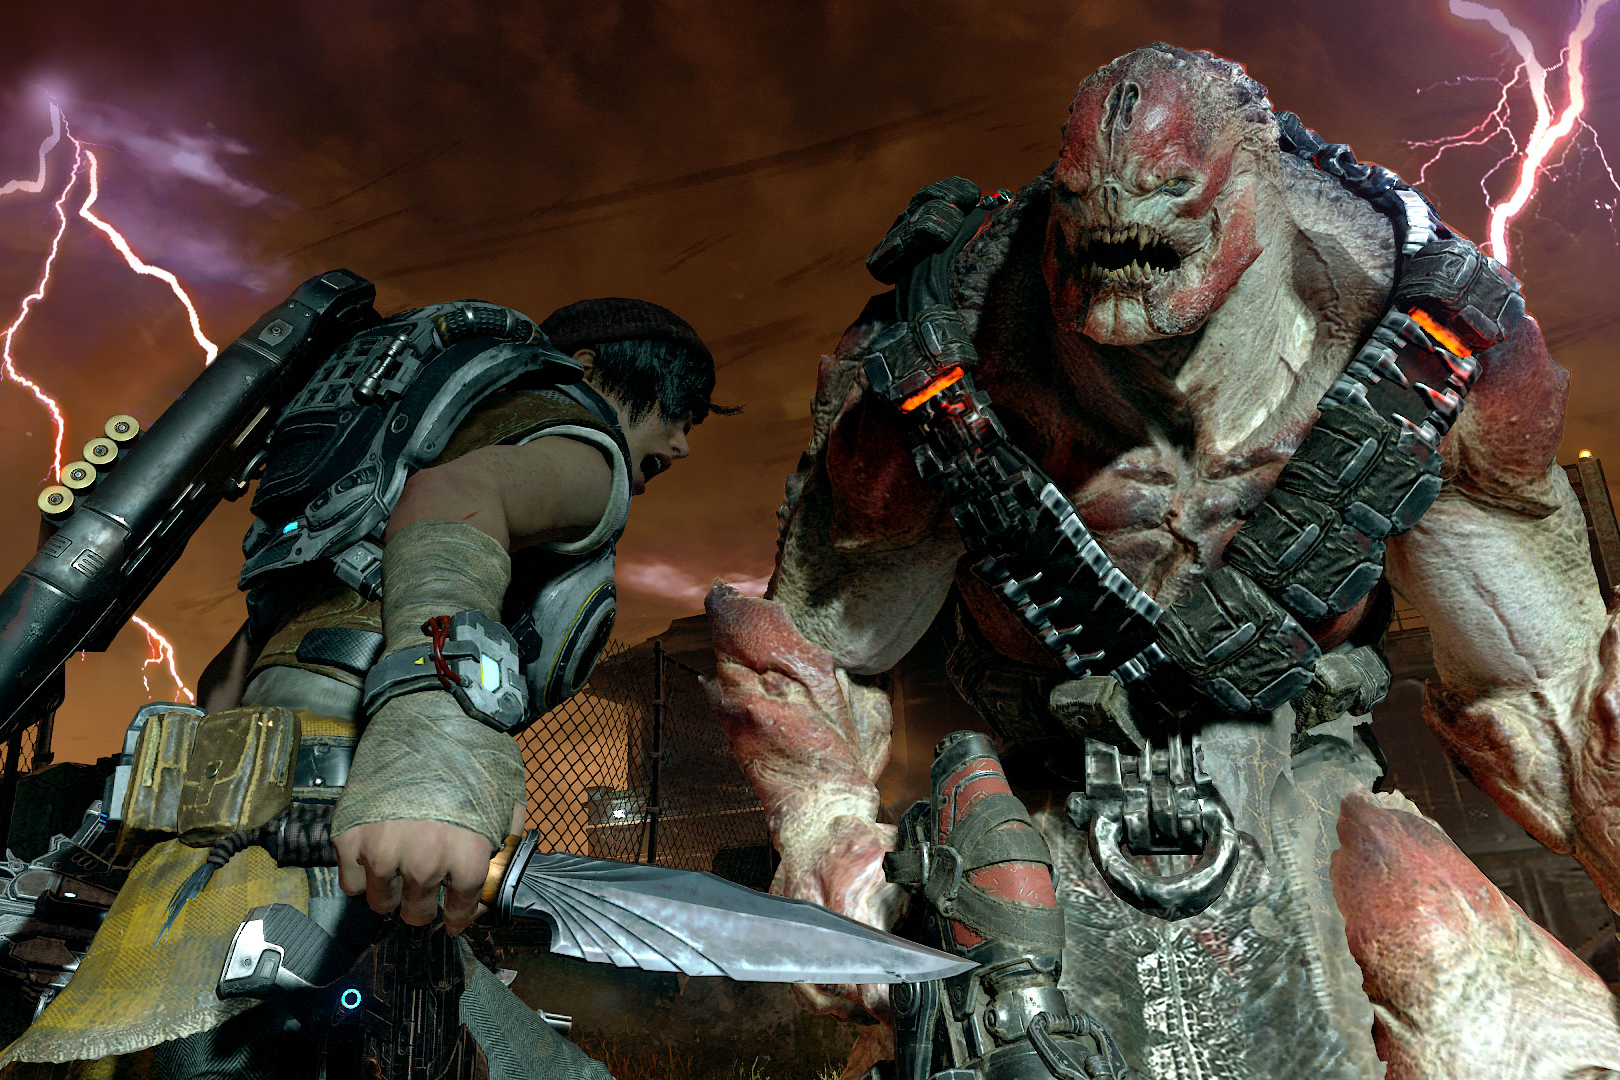 Gears of War 4 has split-screen co-op on PC